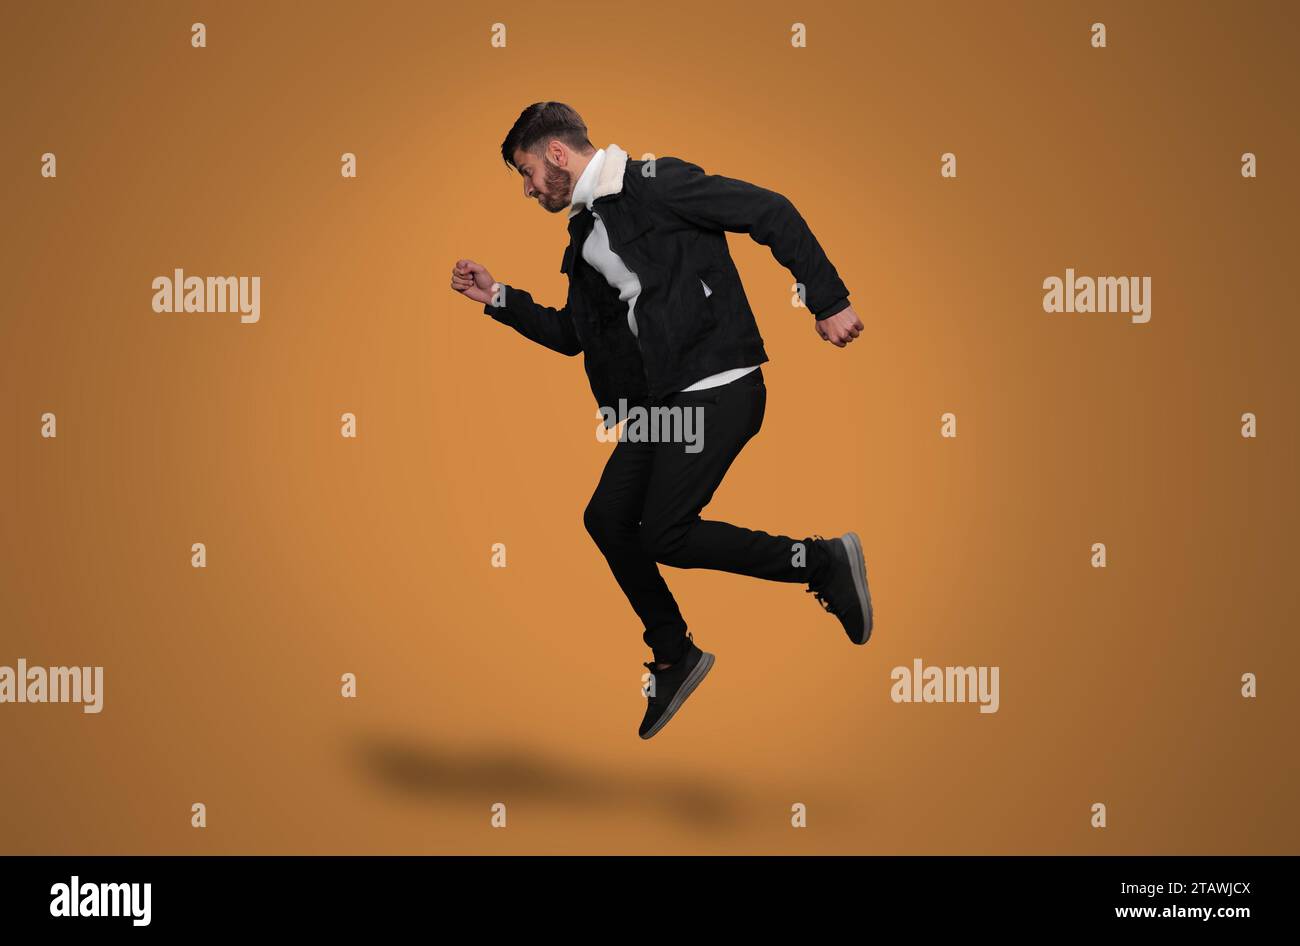 Ein junger Mann springt auf einen gelben Hintergrund | der Mann schwimmt Stockfoto